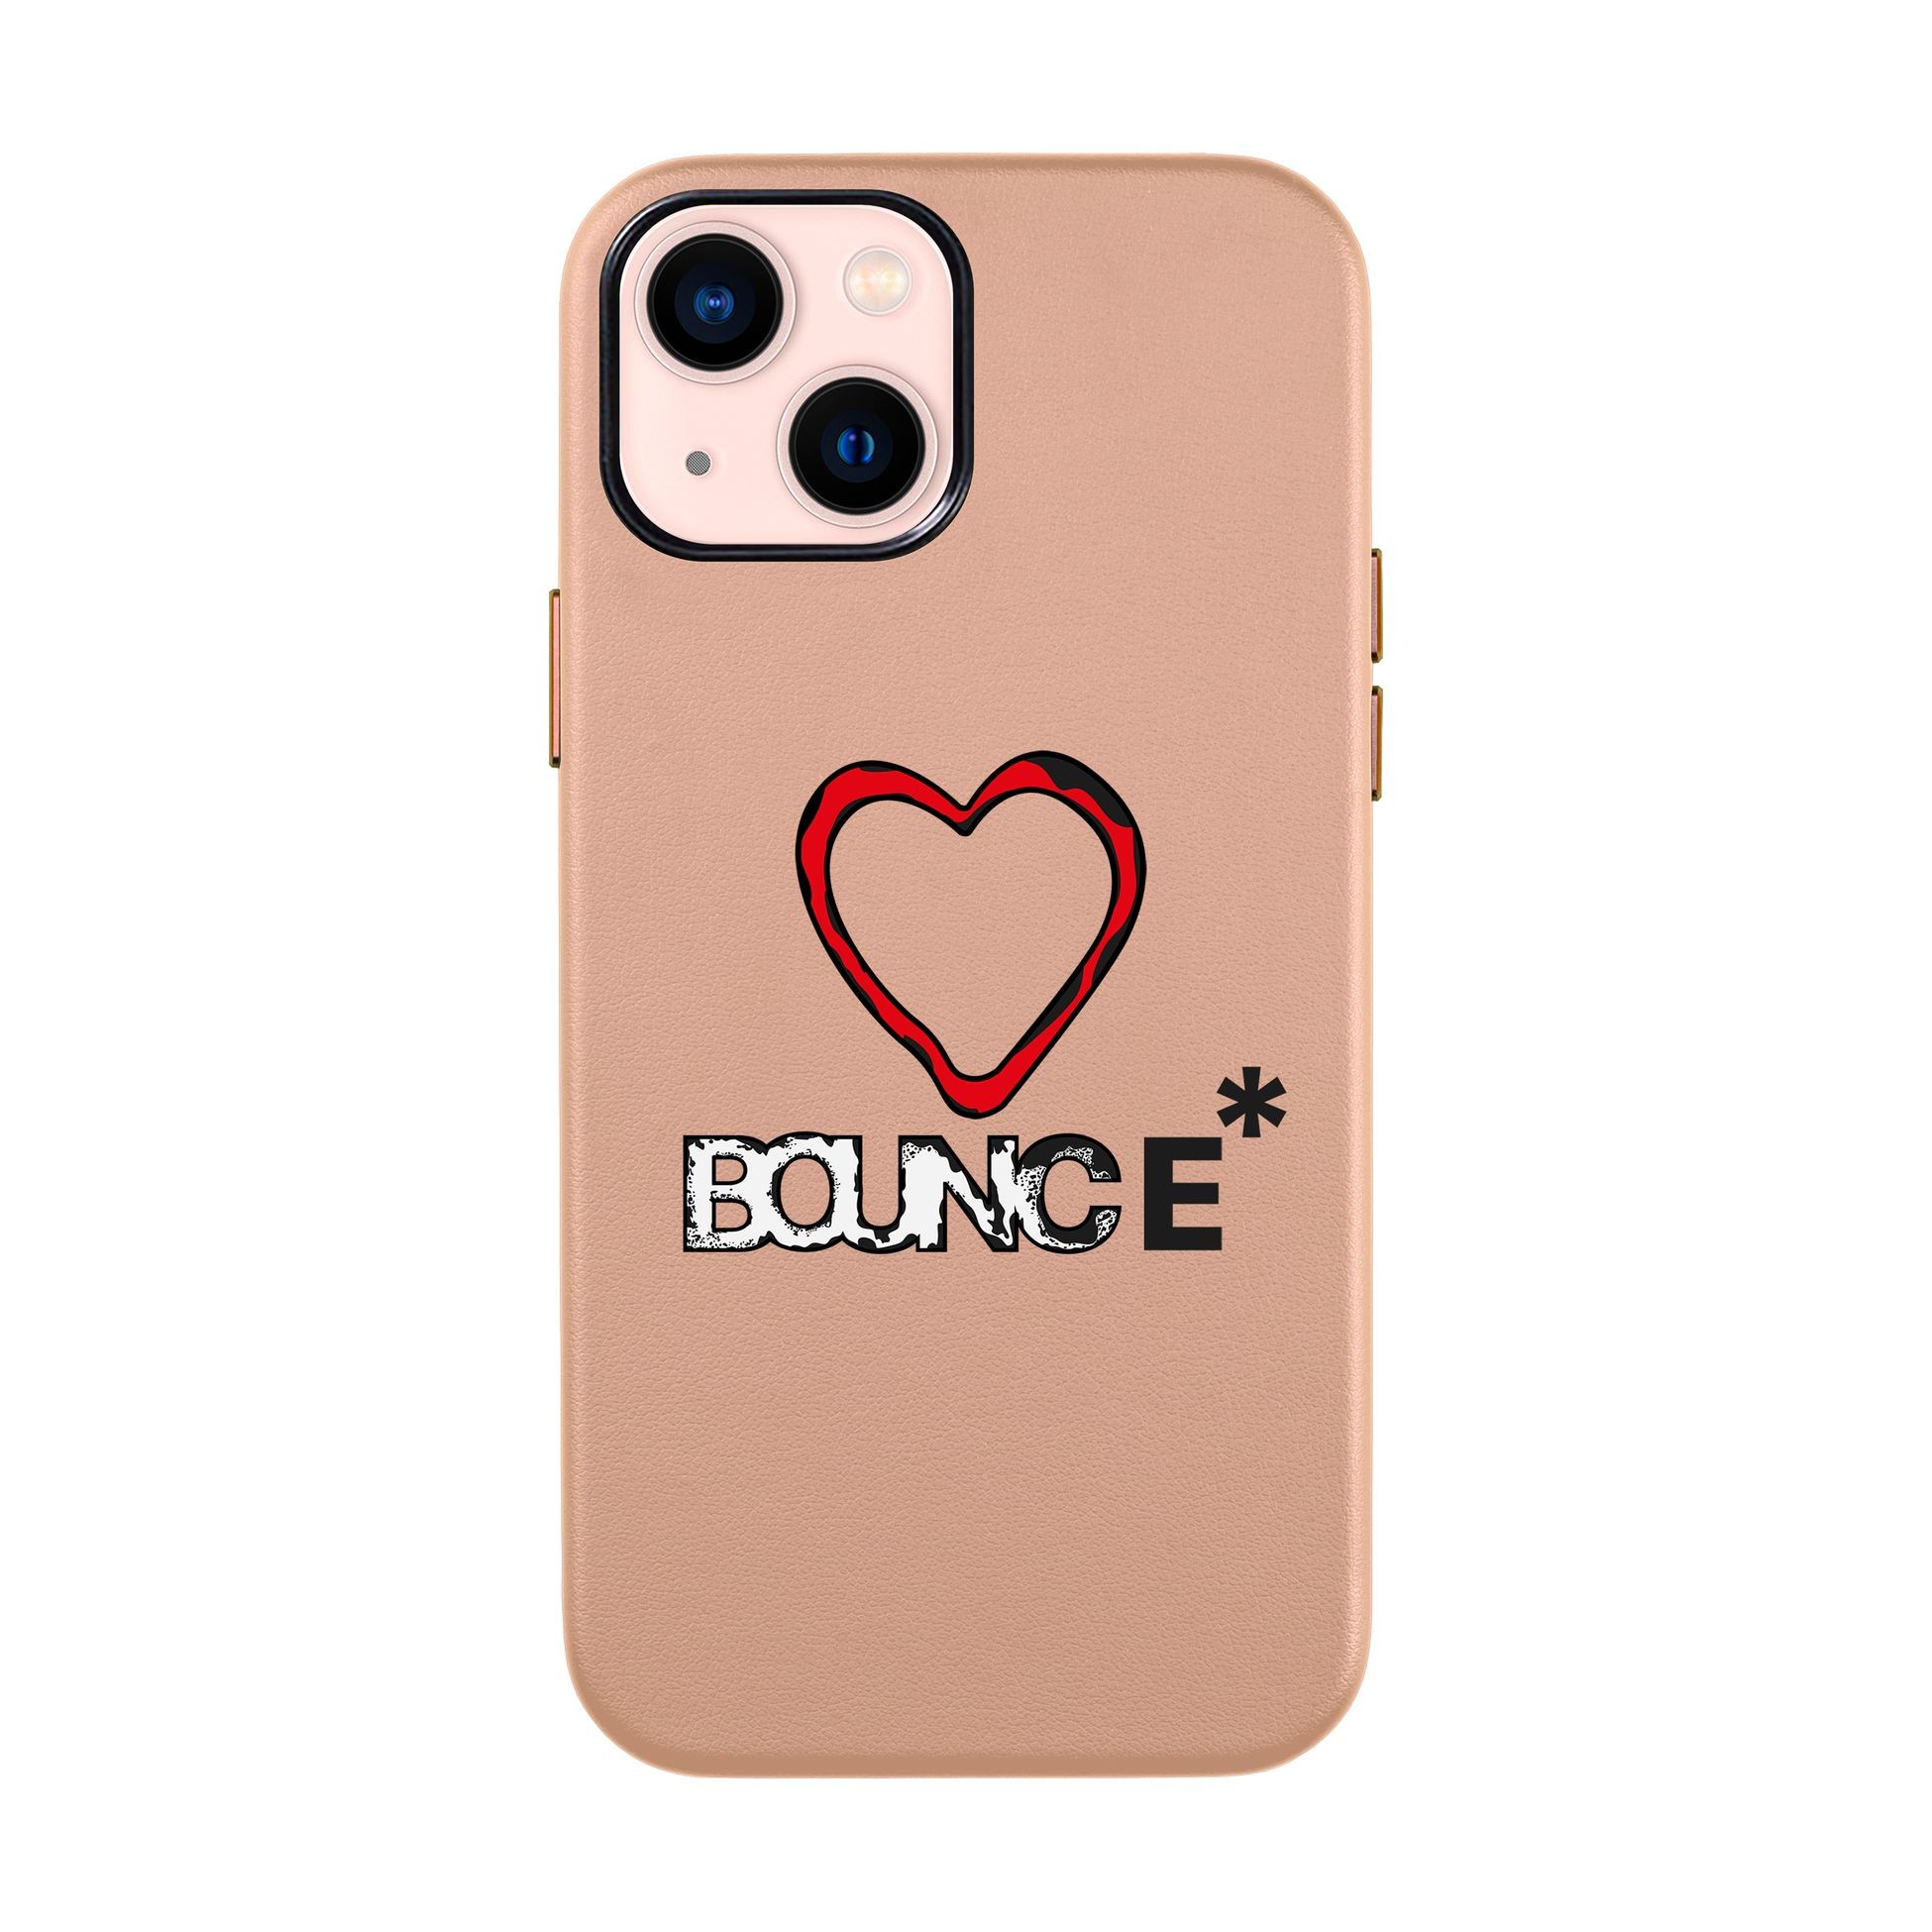 BOUNCE-iPhone Leather Kılıf